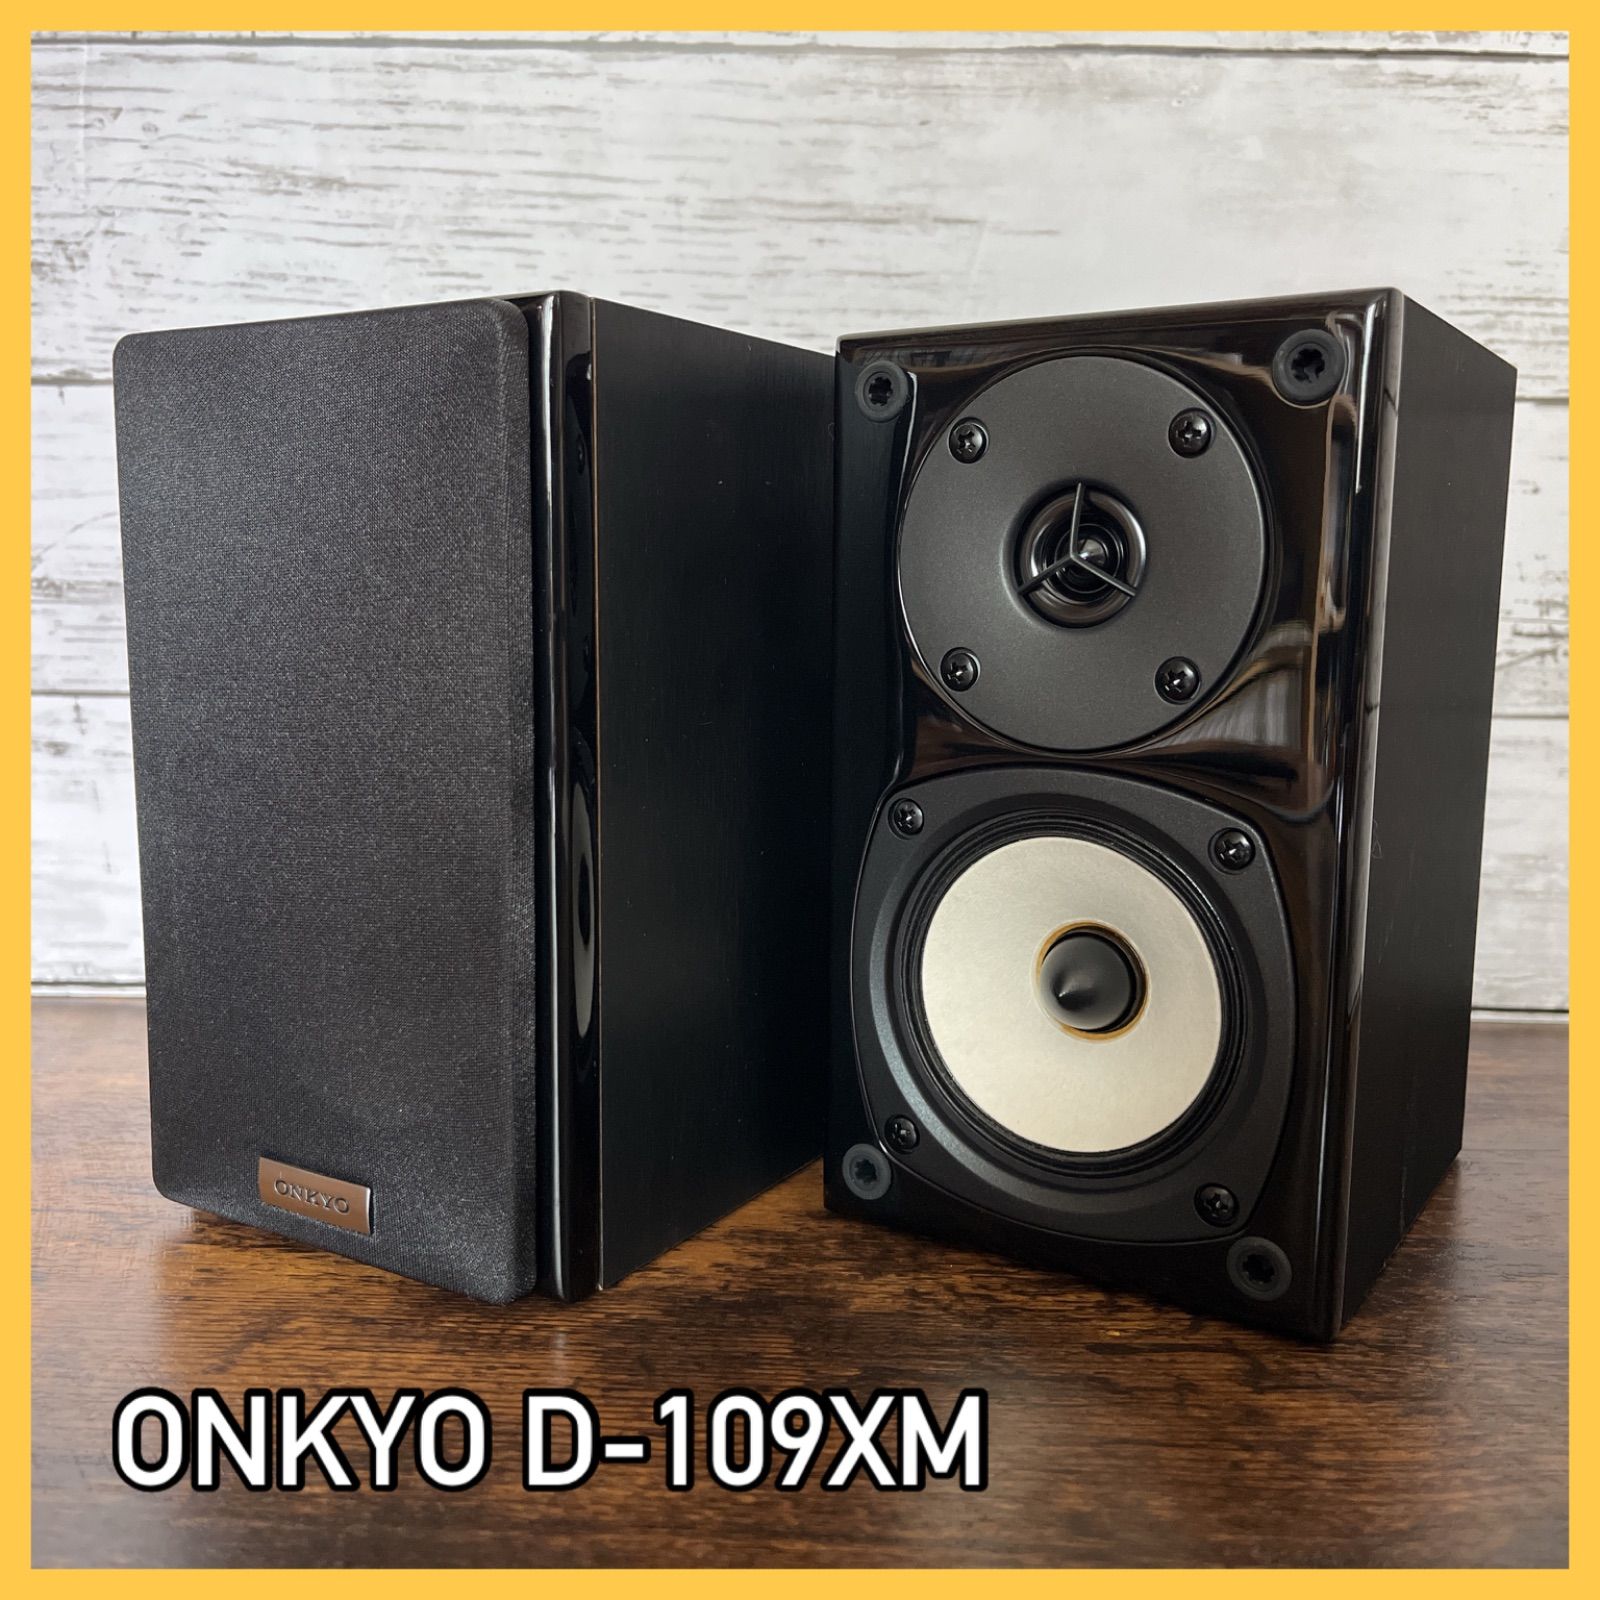 こちら ONKYO D-109M D-109C スピーカーセット 2xS4J-m96851560180 してテレビ 